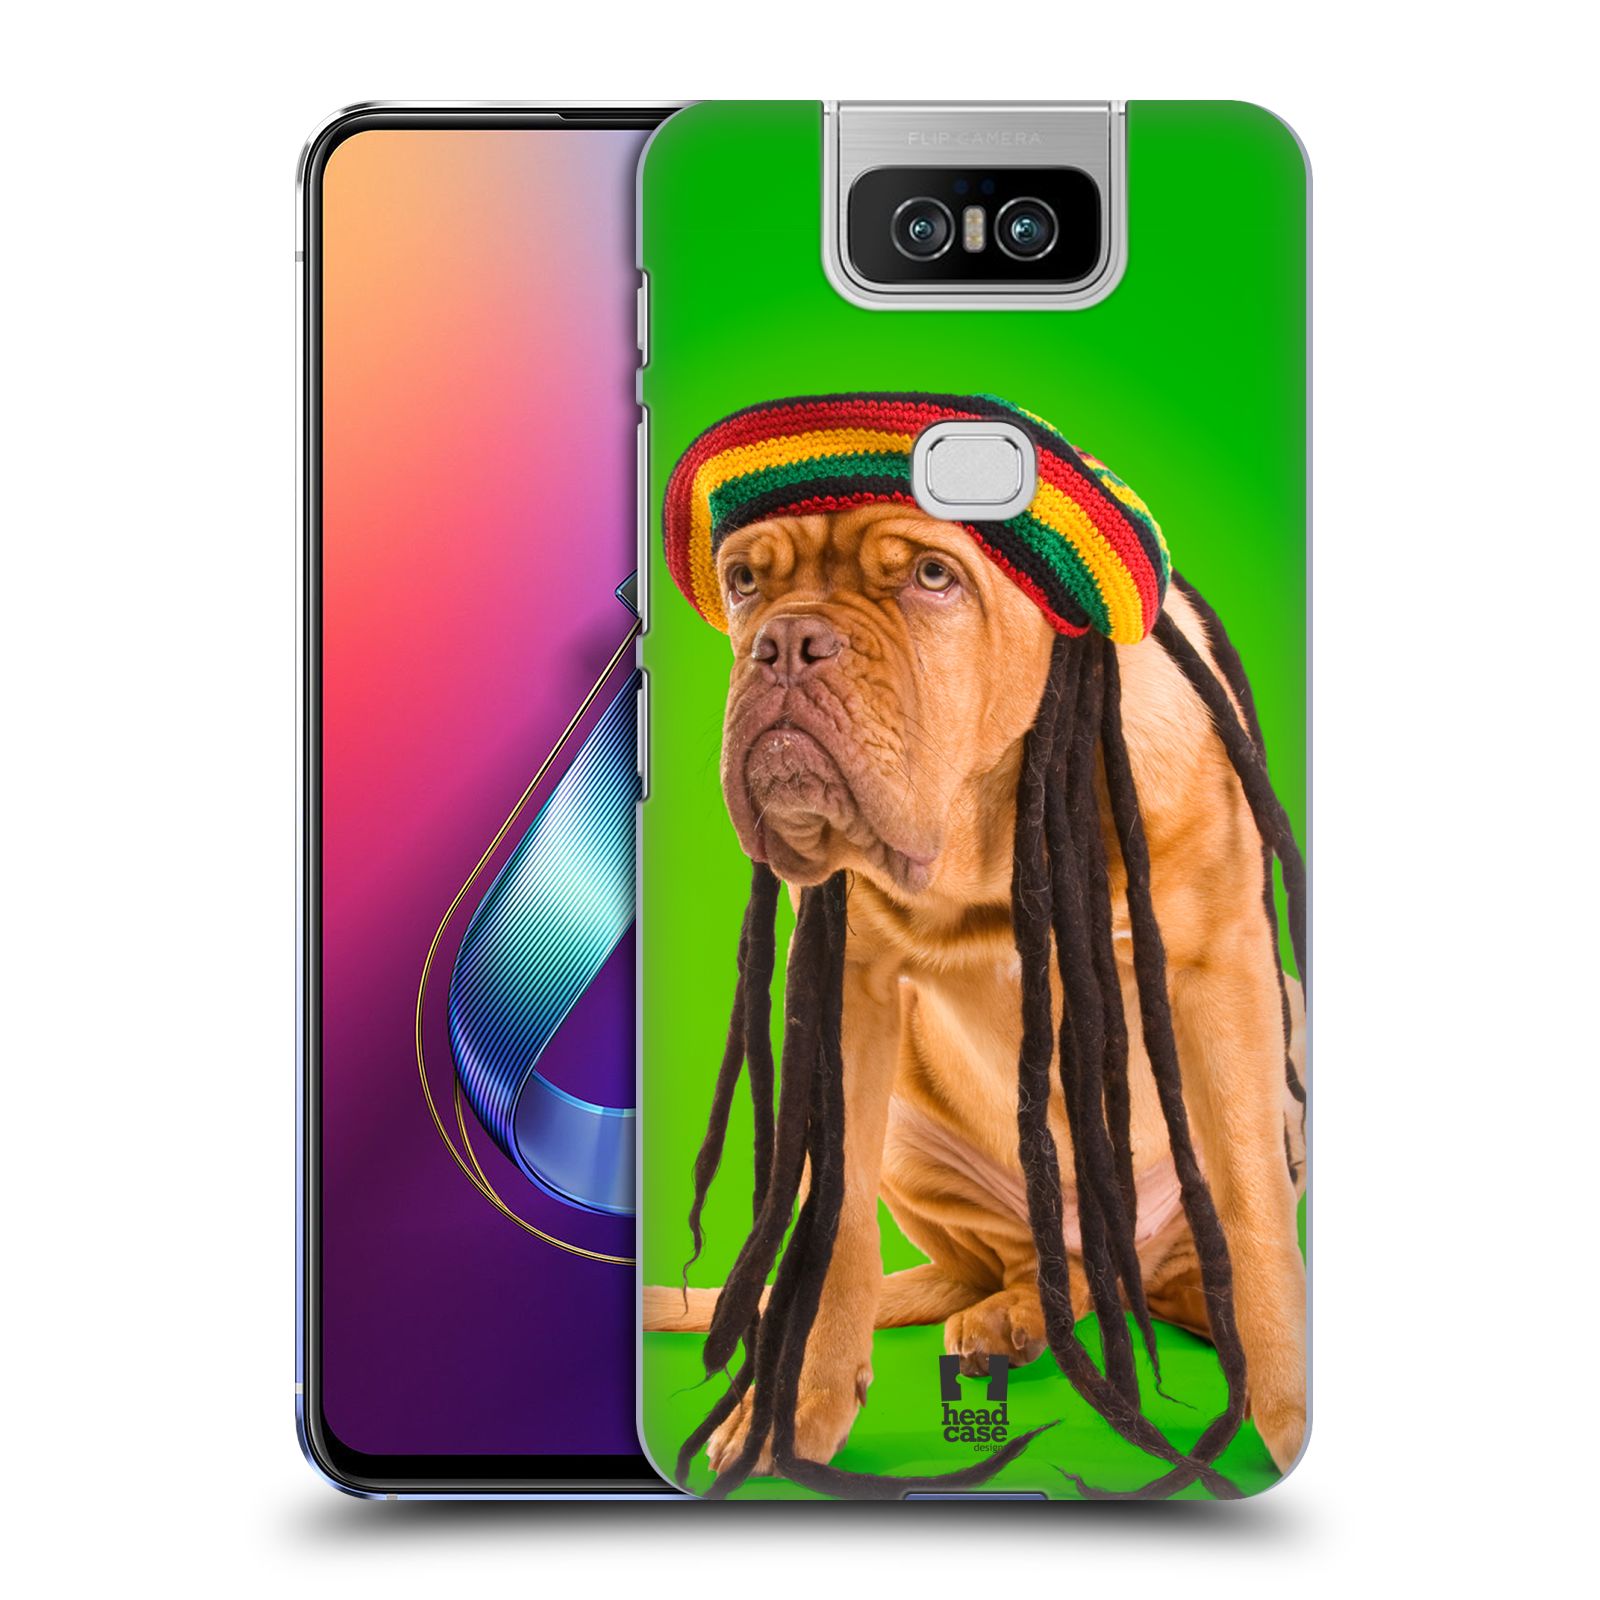 Pouzdro na mobil Asus Zenfone 6 ZS630KL - HEAD CASE - vzor Legrační zvířátka pejsek dredy Rastafarián